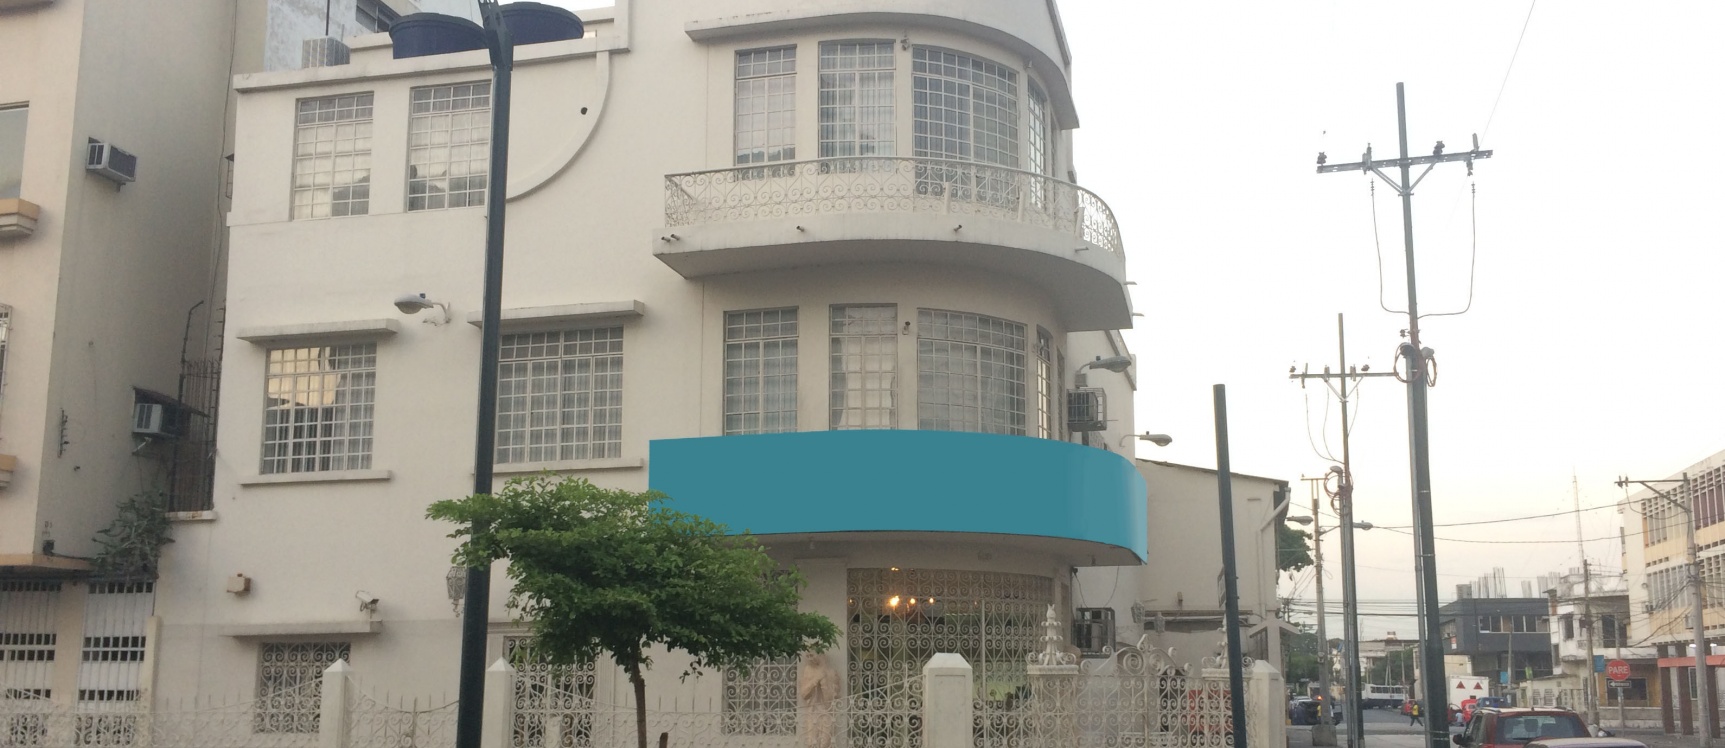 GeoBienes - Alquilo Edificio doble en zona céntrica Guayaquil - Plusvalia Guayaquil Casas de venta y alquiler Inmobiliaria Ecuador